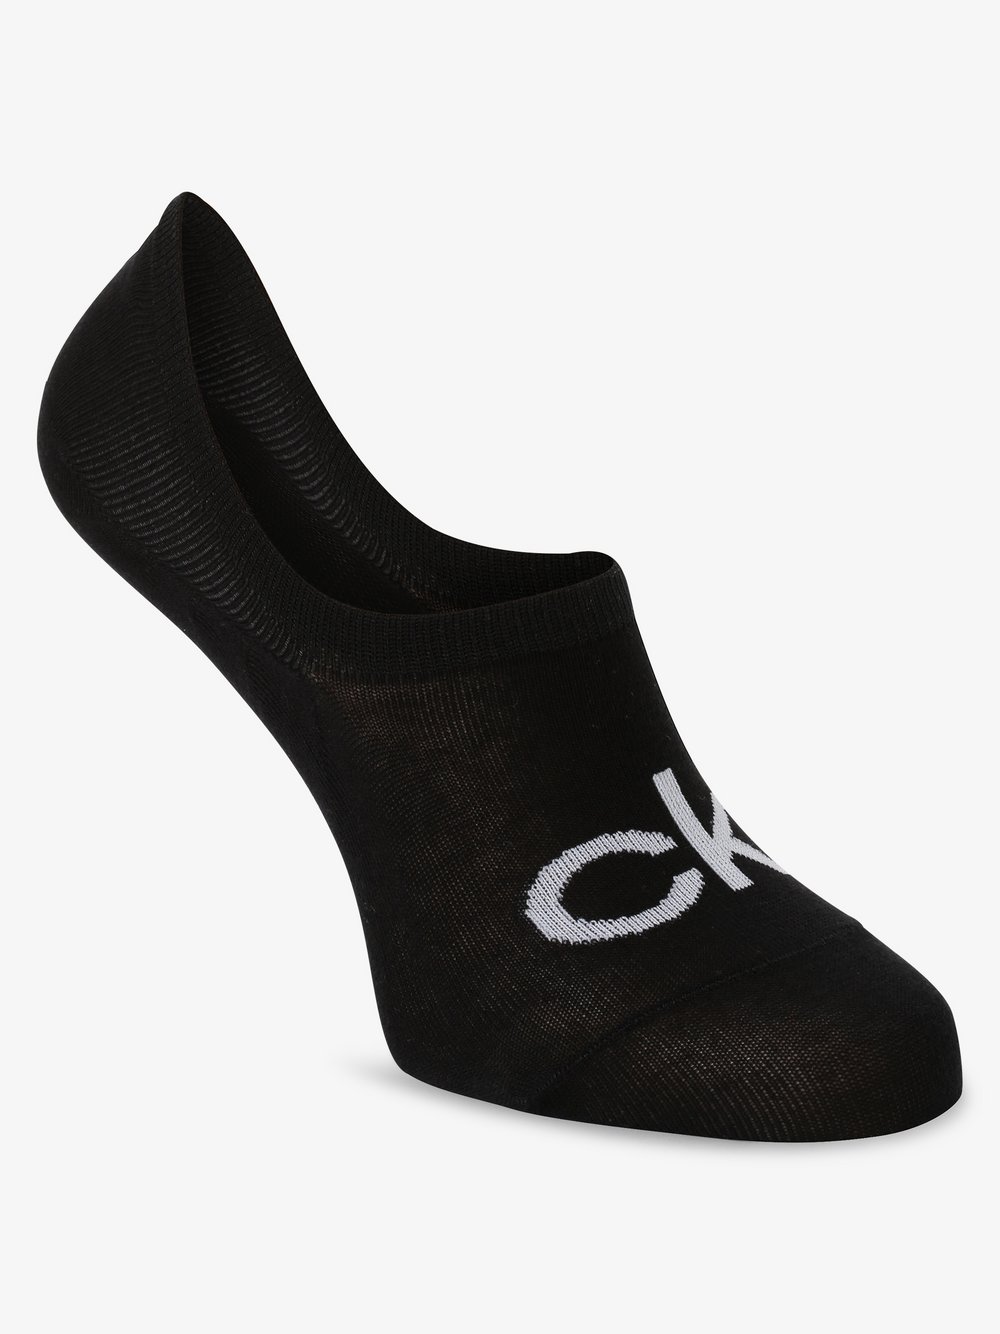 Calvin Klein - Damskie skarpety do obuwia sportowego, czarny